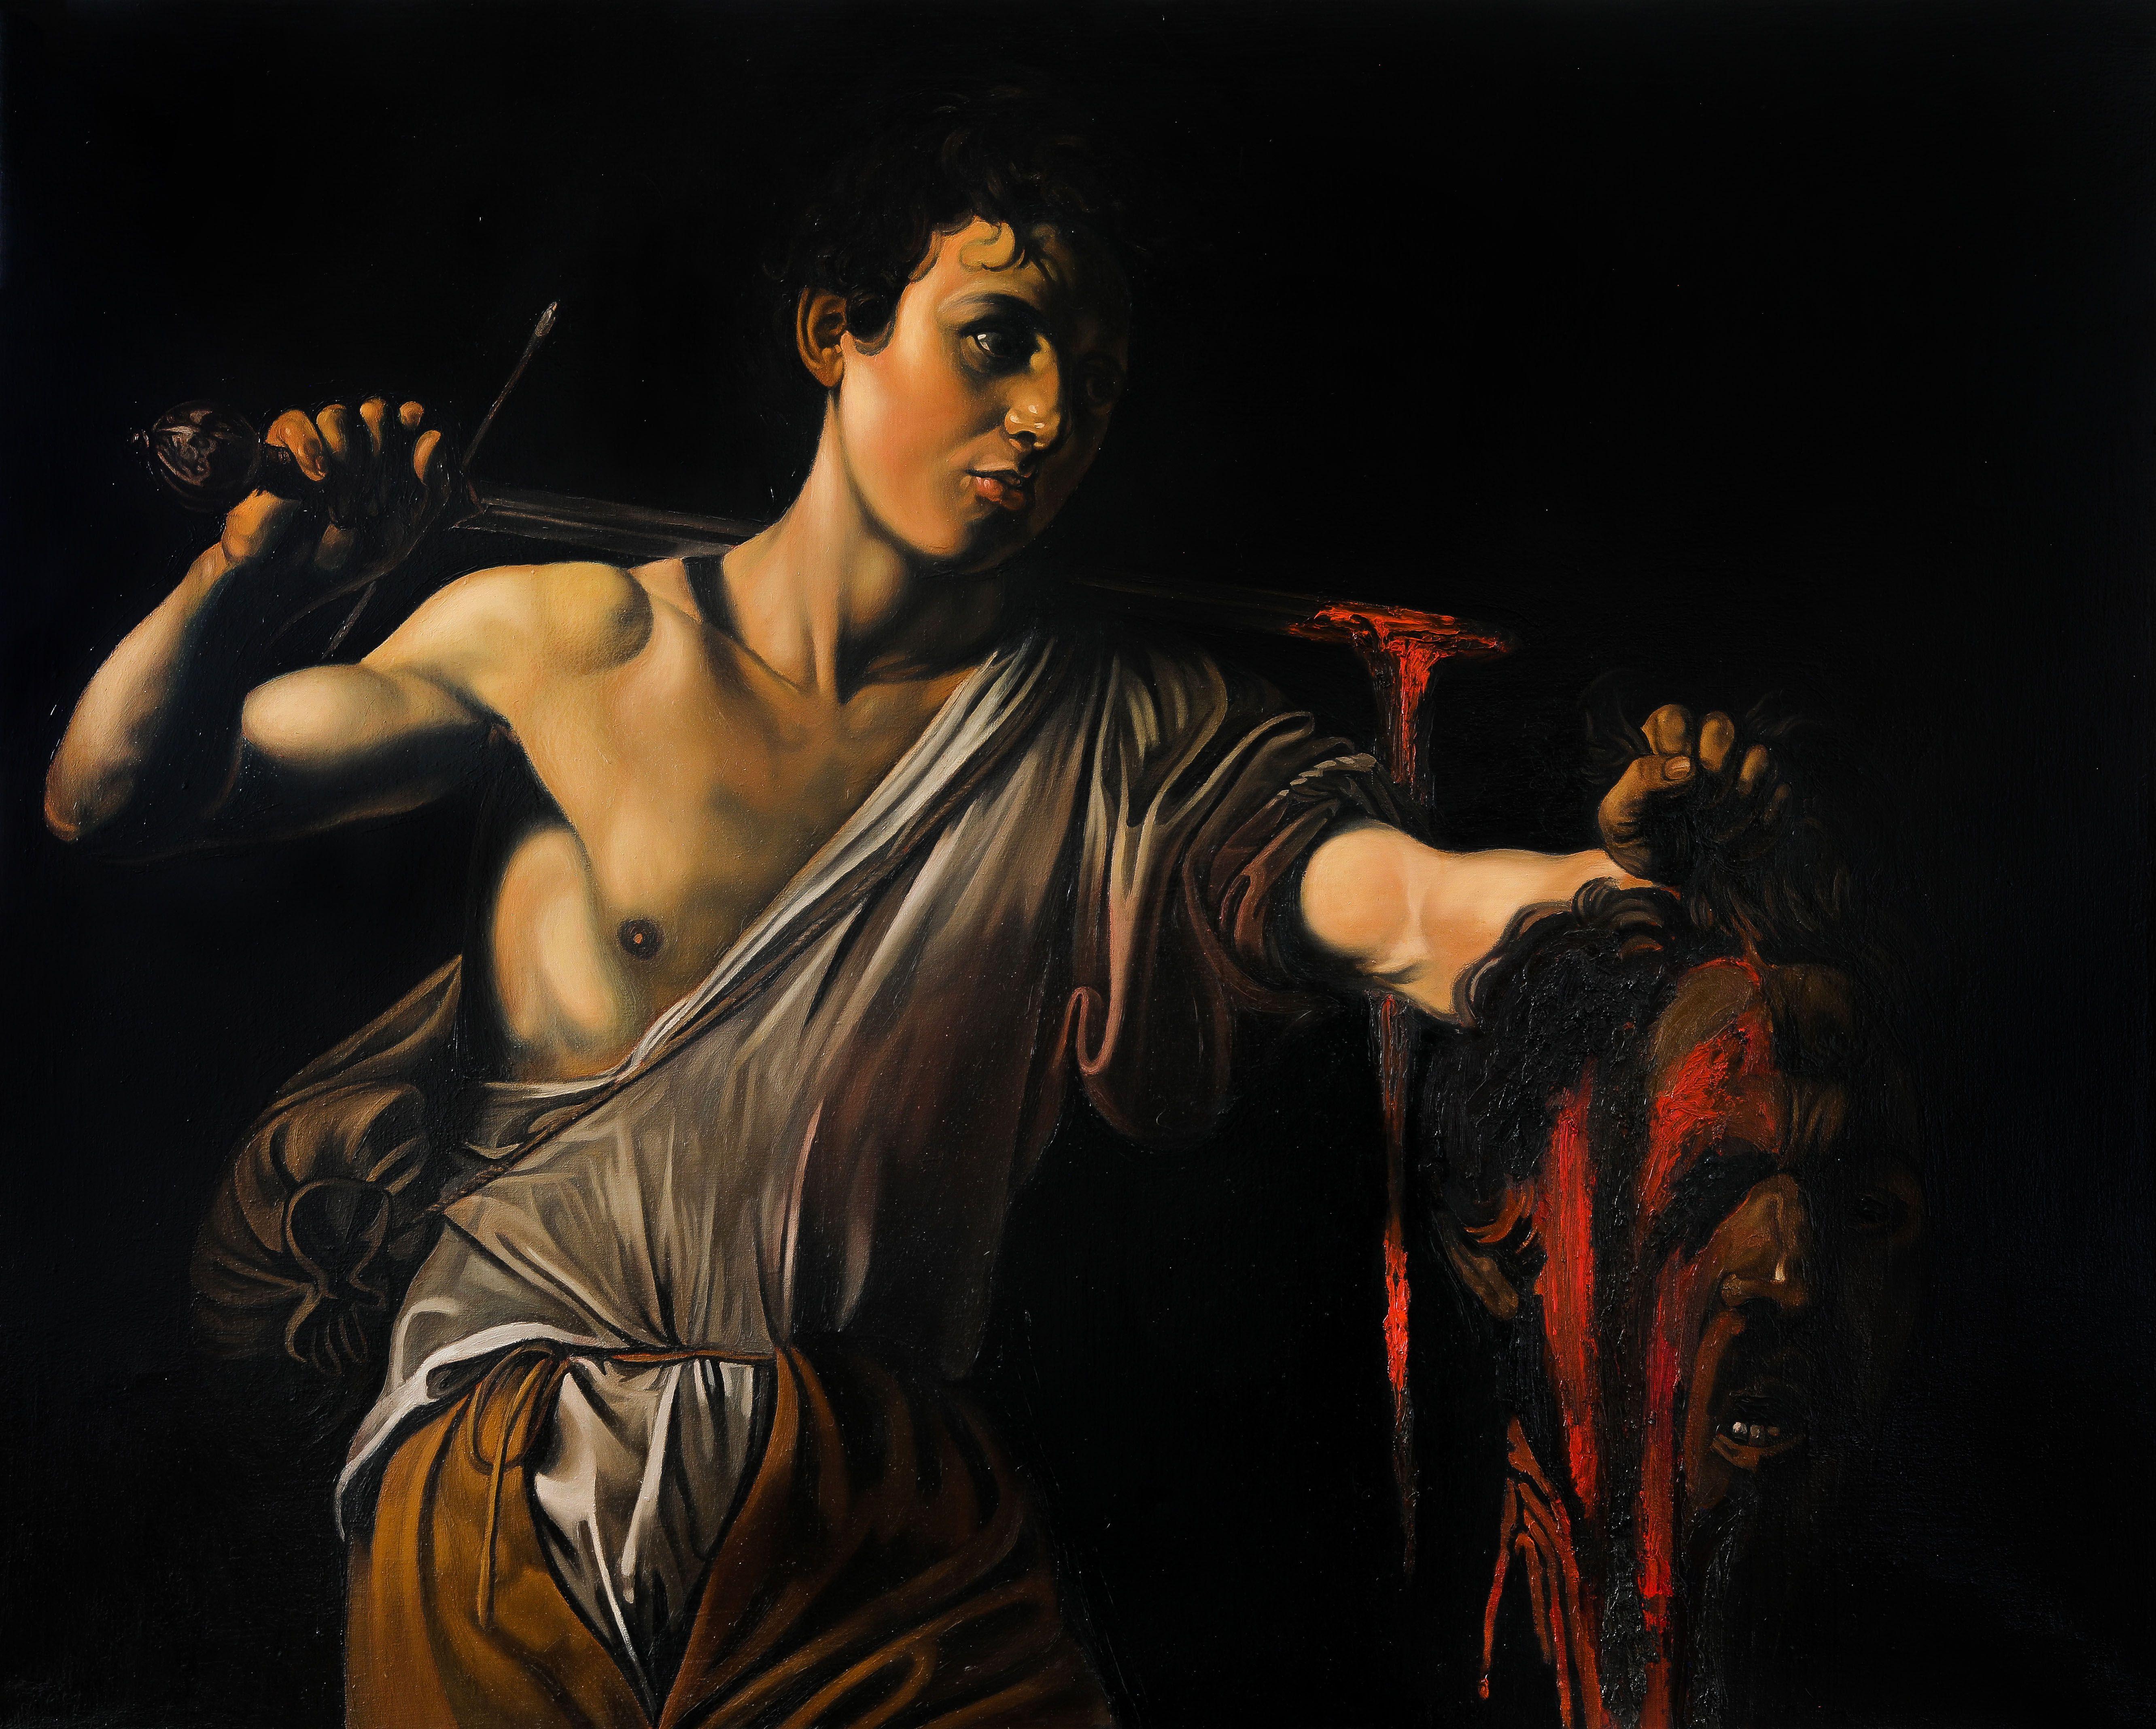 David mit Kopf von Caravaggio, aus dem Heiligen Bildtu, Gemälde, Öl auf Leinwand – Painting von Roman Rembovsky